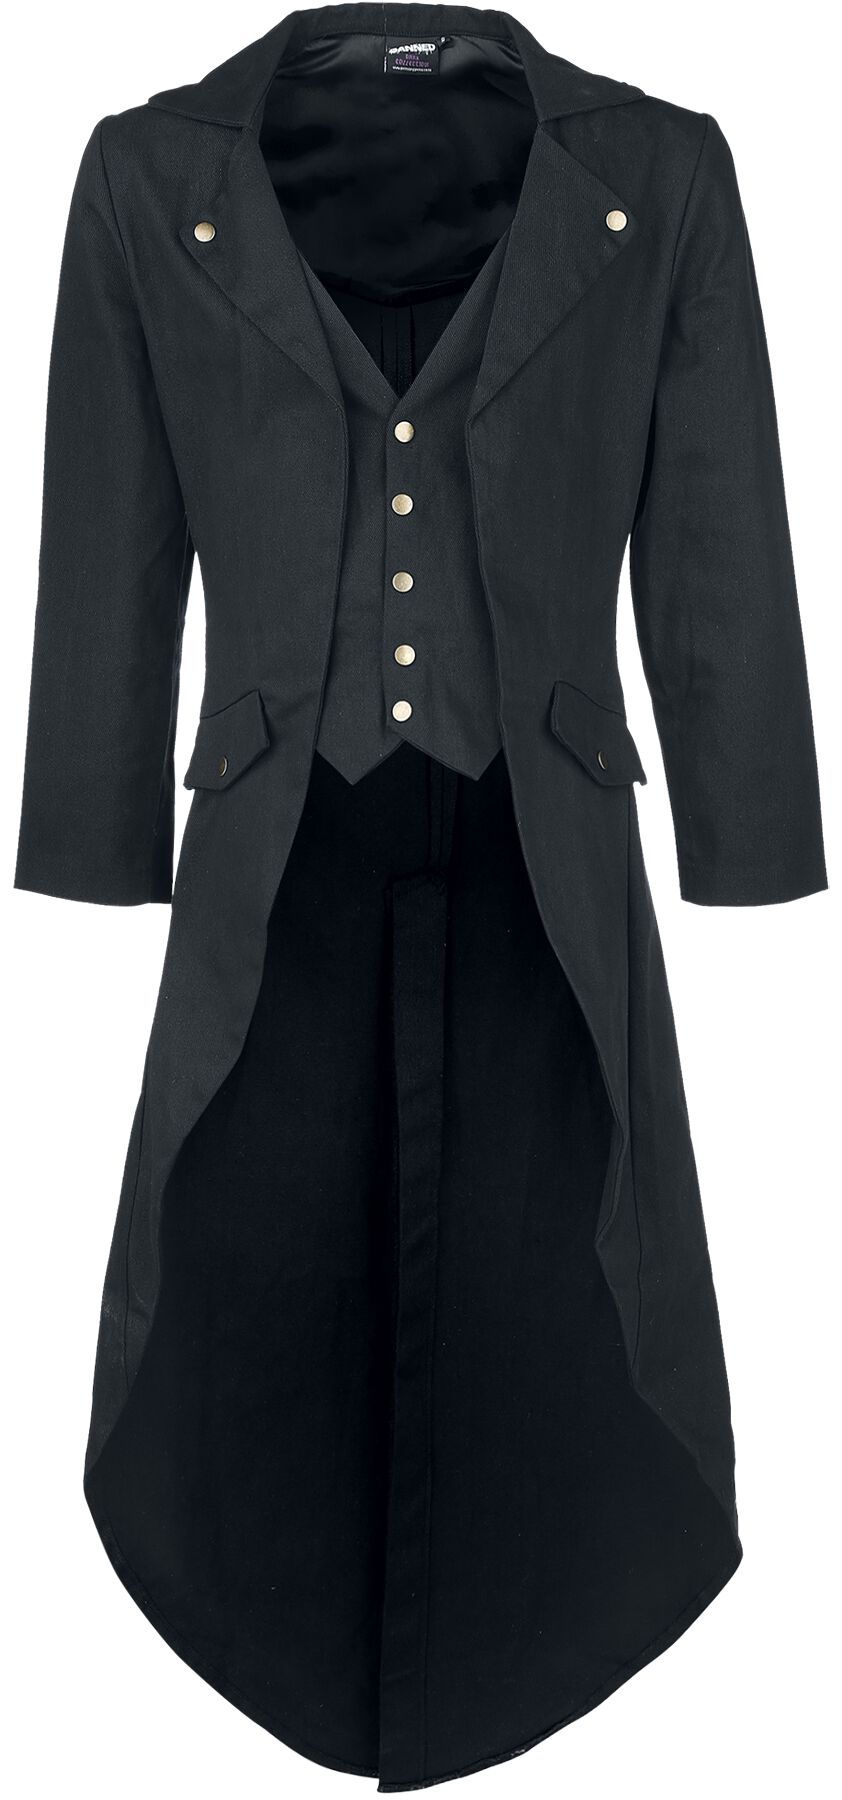 Banned Alternative - Gothic Militärmantel - Dovetail Coat - L bis 5XL - für Männer - Größe 4XL - schwarz von Banned Alternative